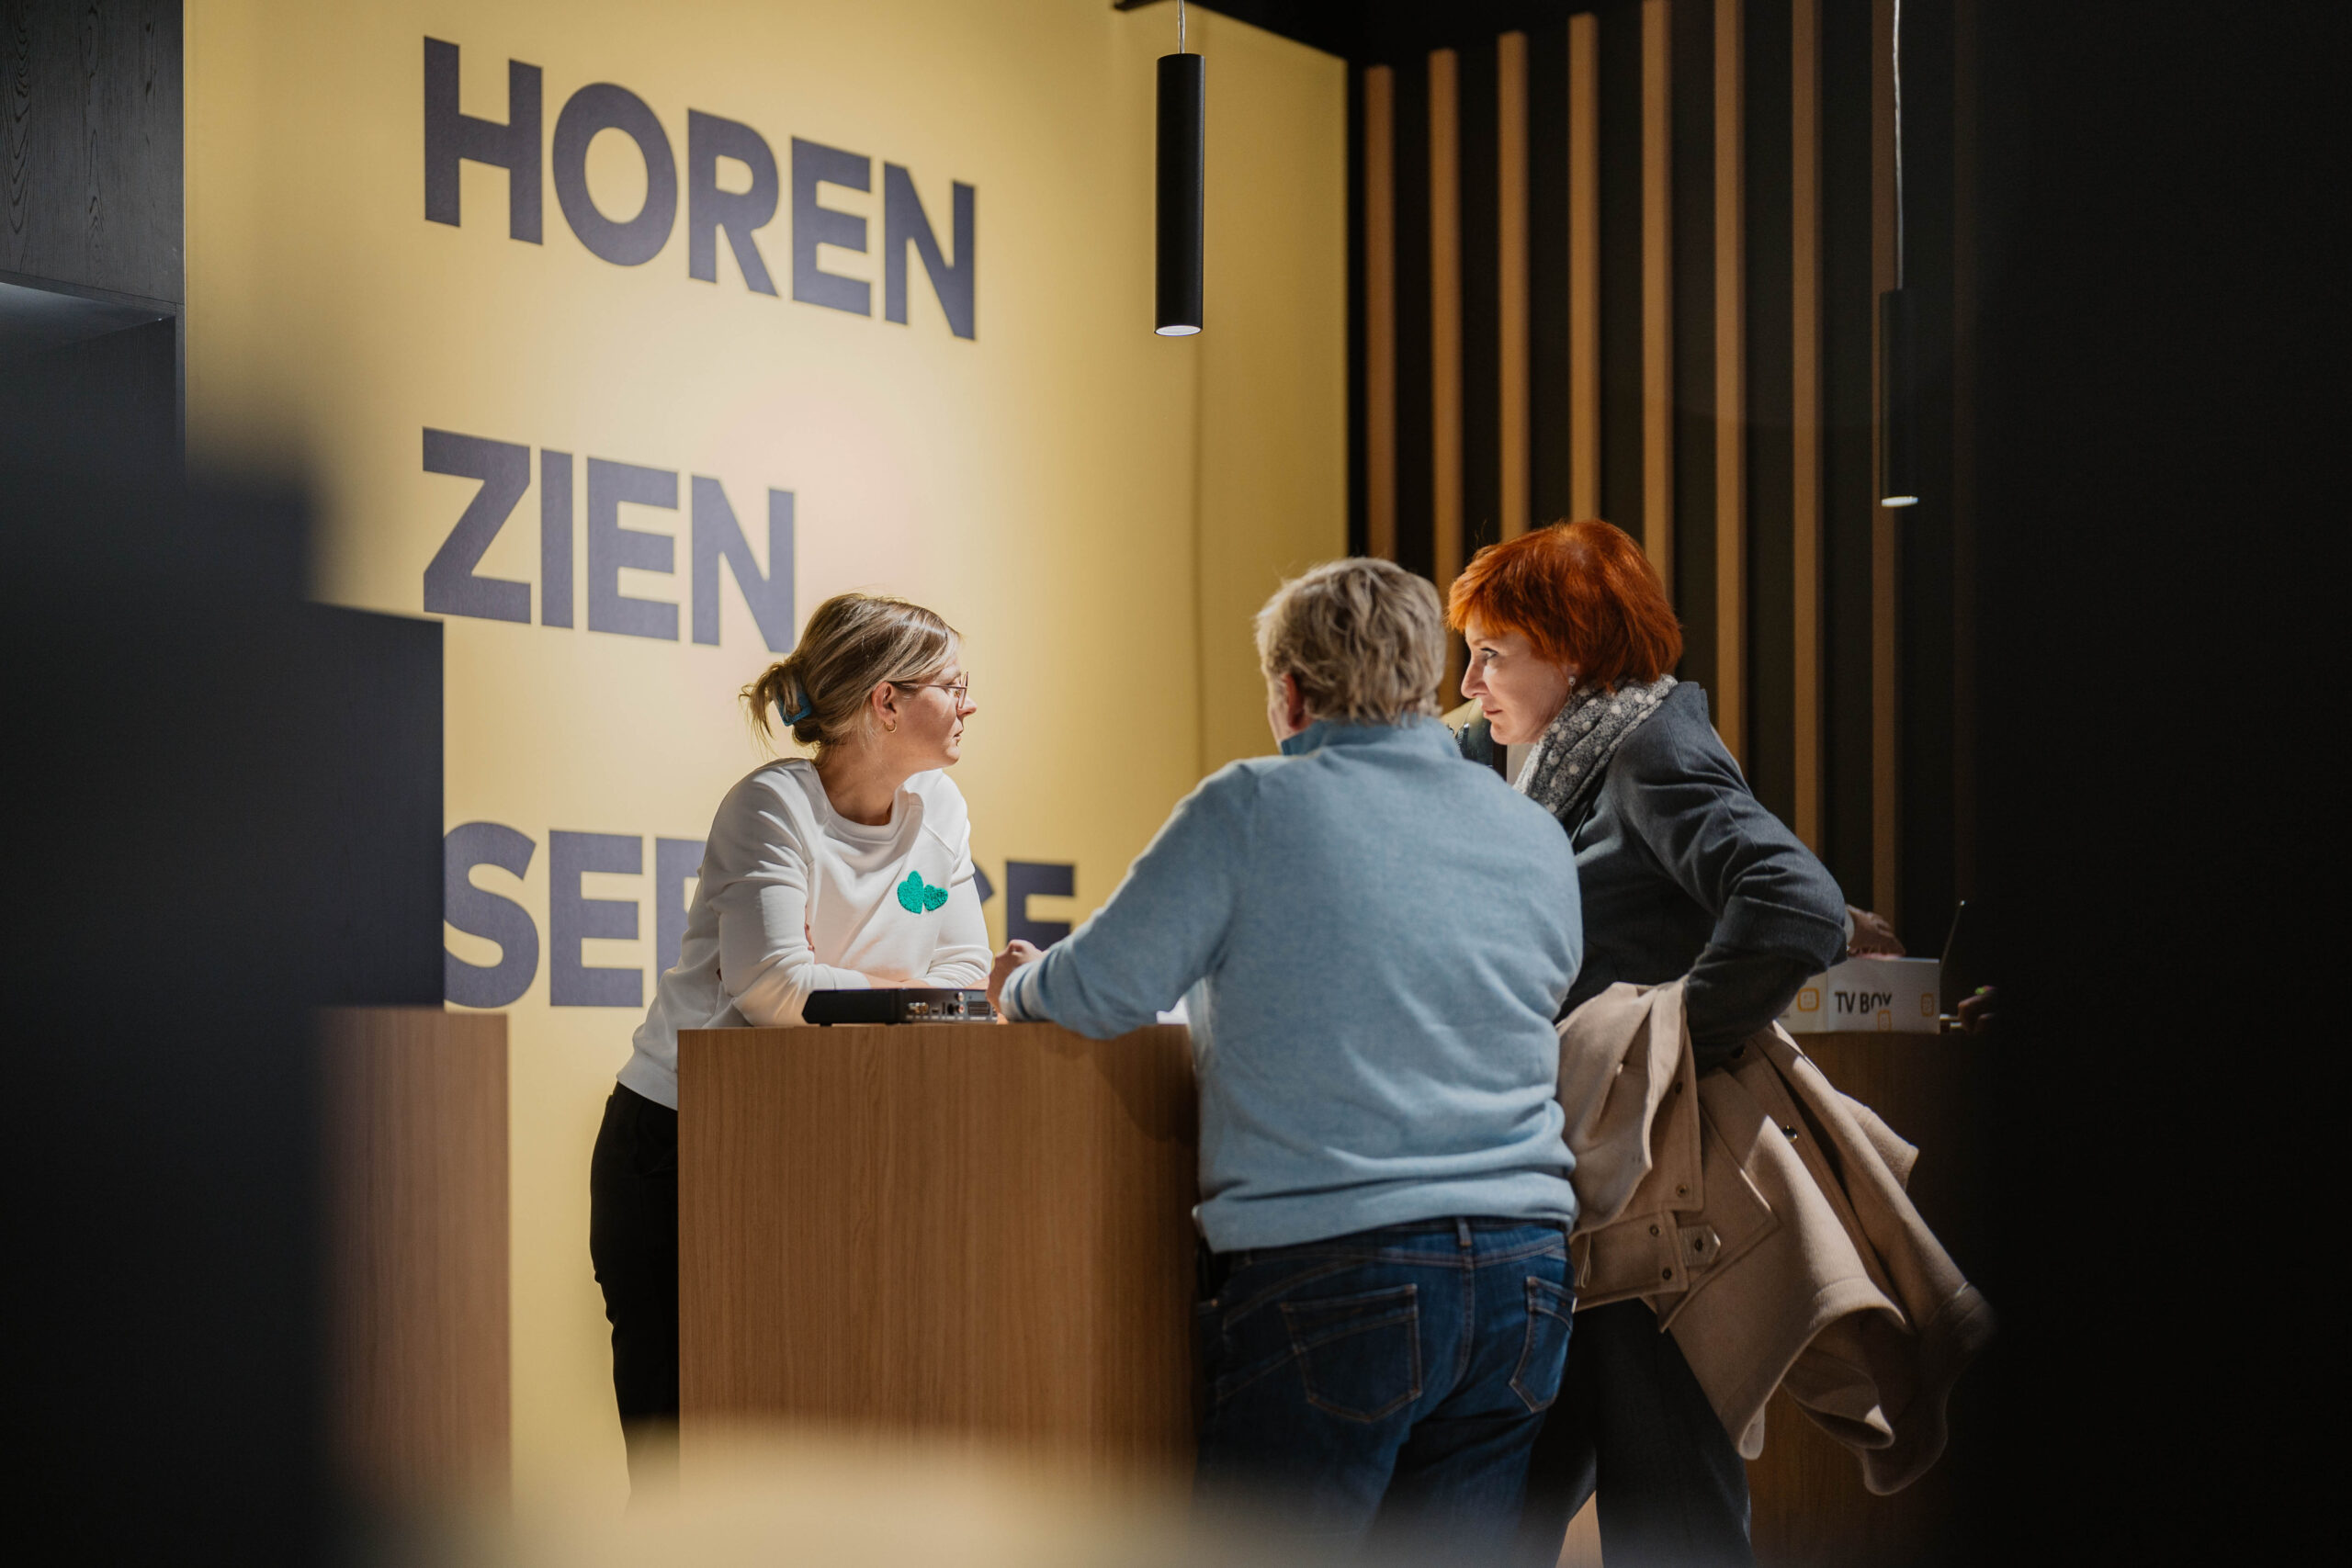 Telenet-verkoper helpt twee klanten aan de Telenet-balie in de Spectrum-winkel in Kortrijk - Telenet-abonnementen, persoonlijk advies, Spectrum service